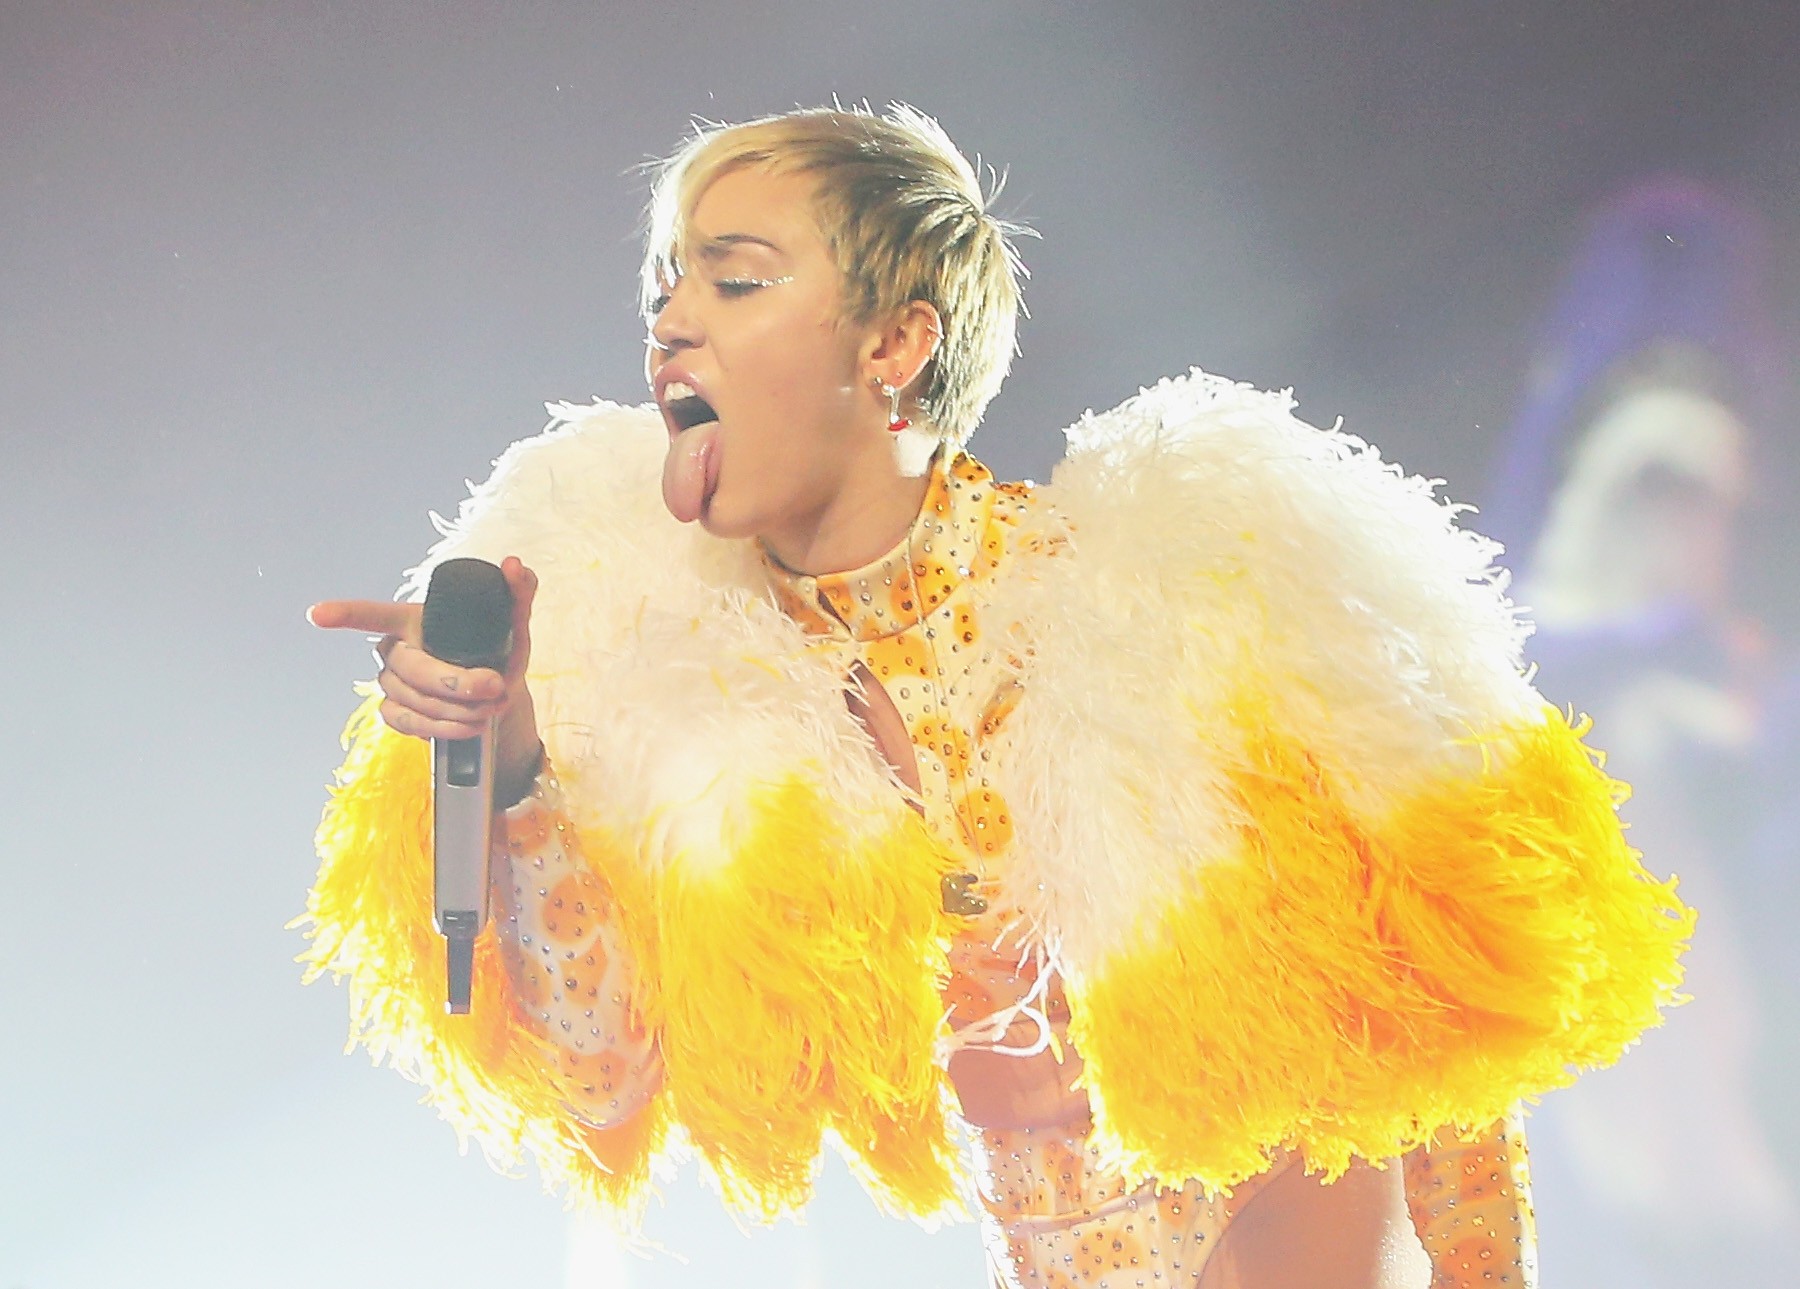 1288px x 1289px - Bangerz remains Miley Cyrus' best album